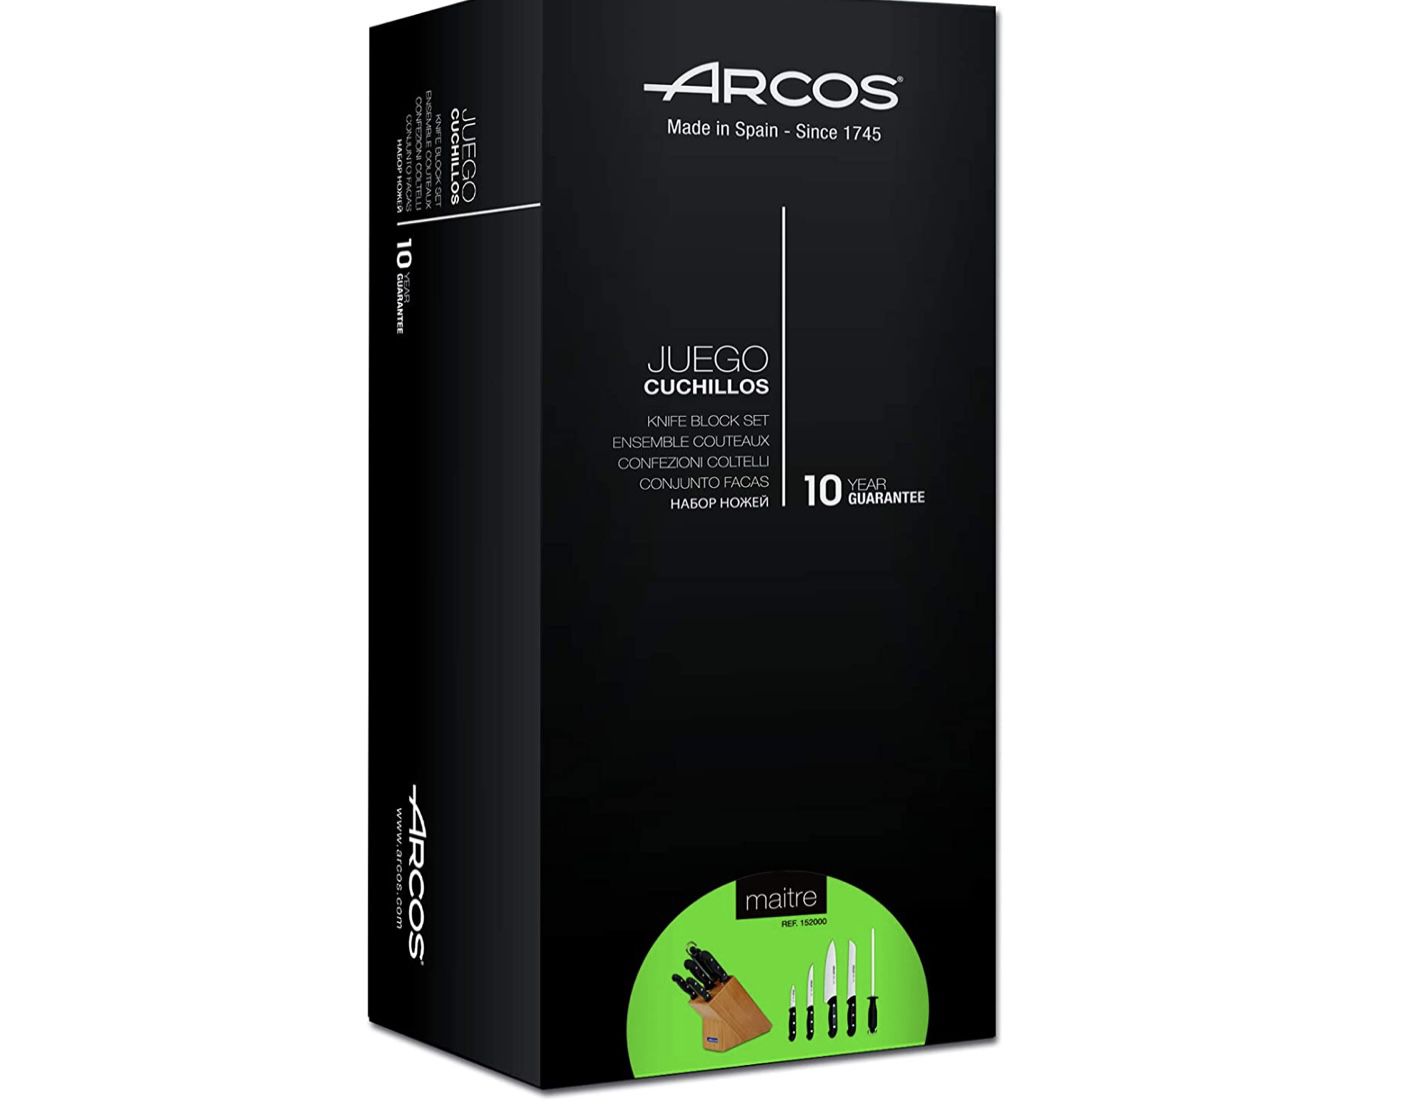 Arcos Serie Maitre   Küchenmesser Set für 53,90€ (statt 73€)